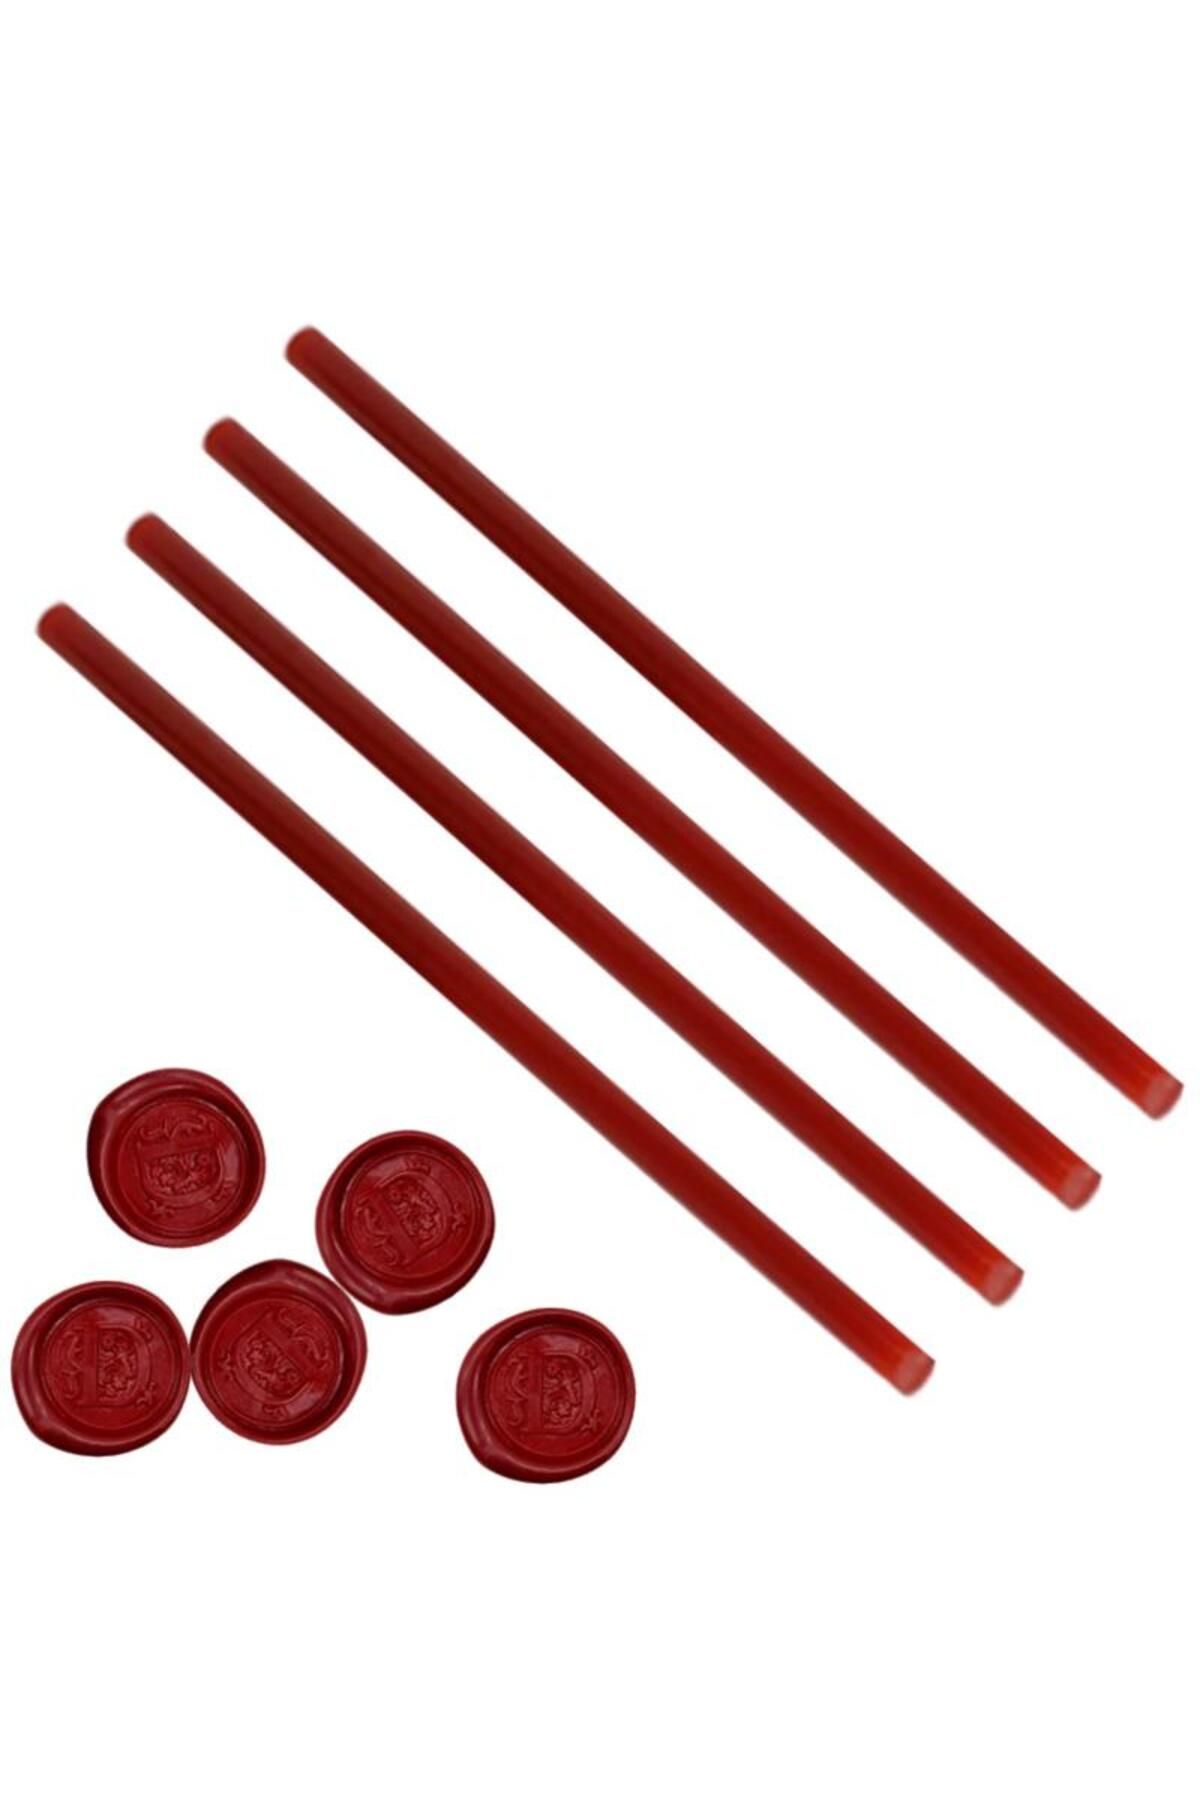 Profisher Mühür Mumu Çubuk Sıcak Tutkal 11mm x 30cm 4 lü Kırmızı Renk